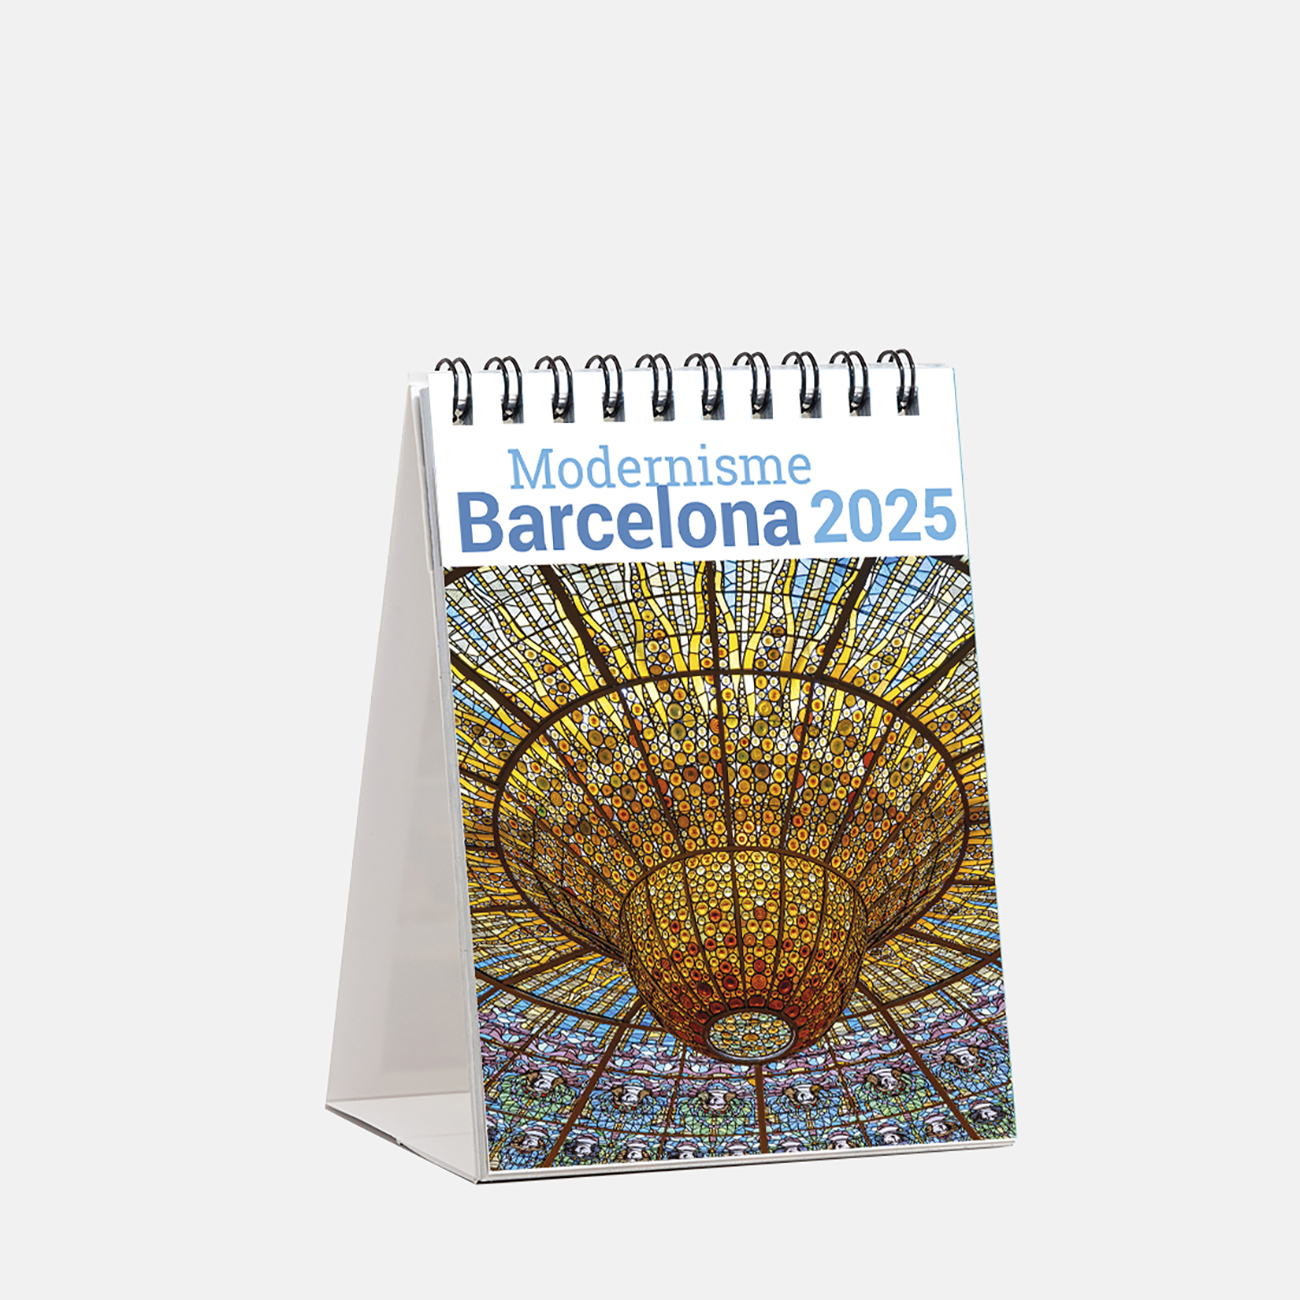 Calendar 2025 Modernism Barcelona sm25mod calendario mini 2025 modernisme barcelona